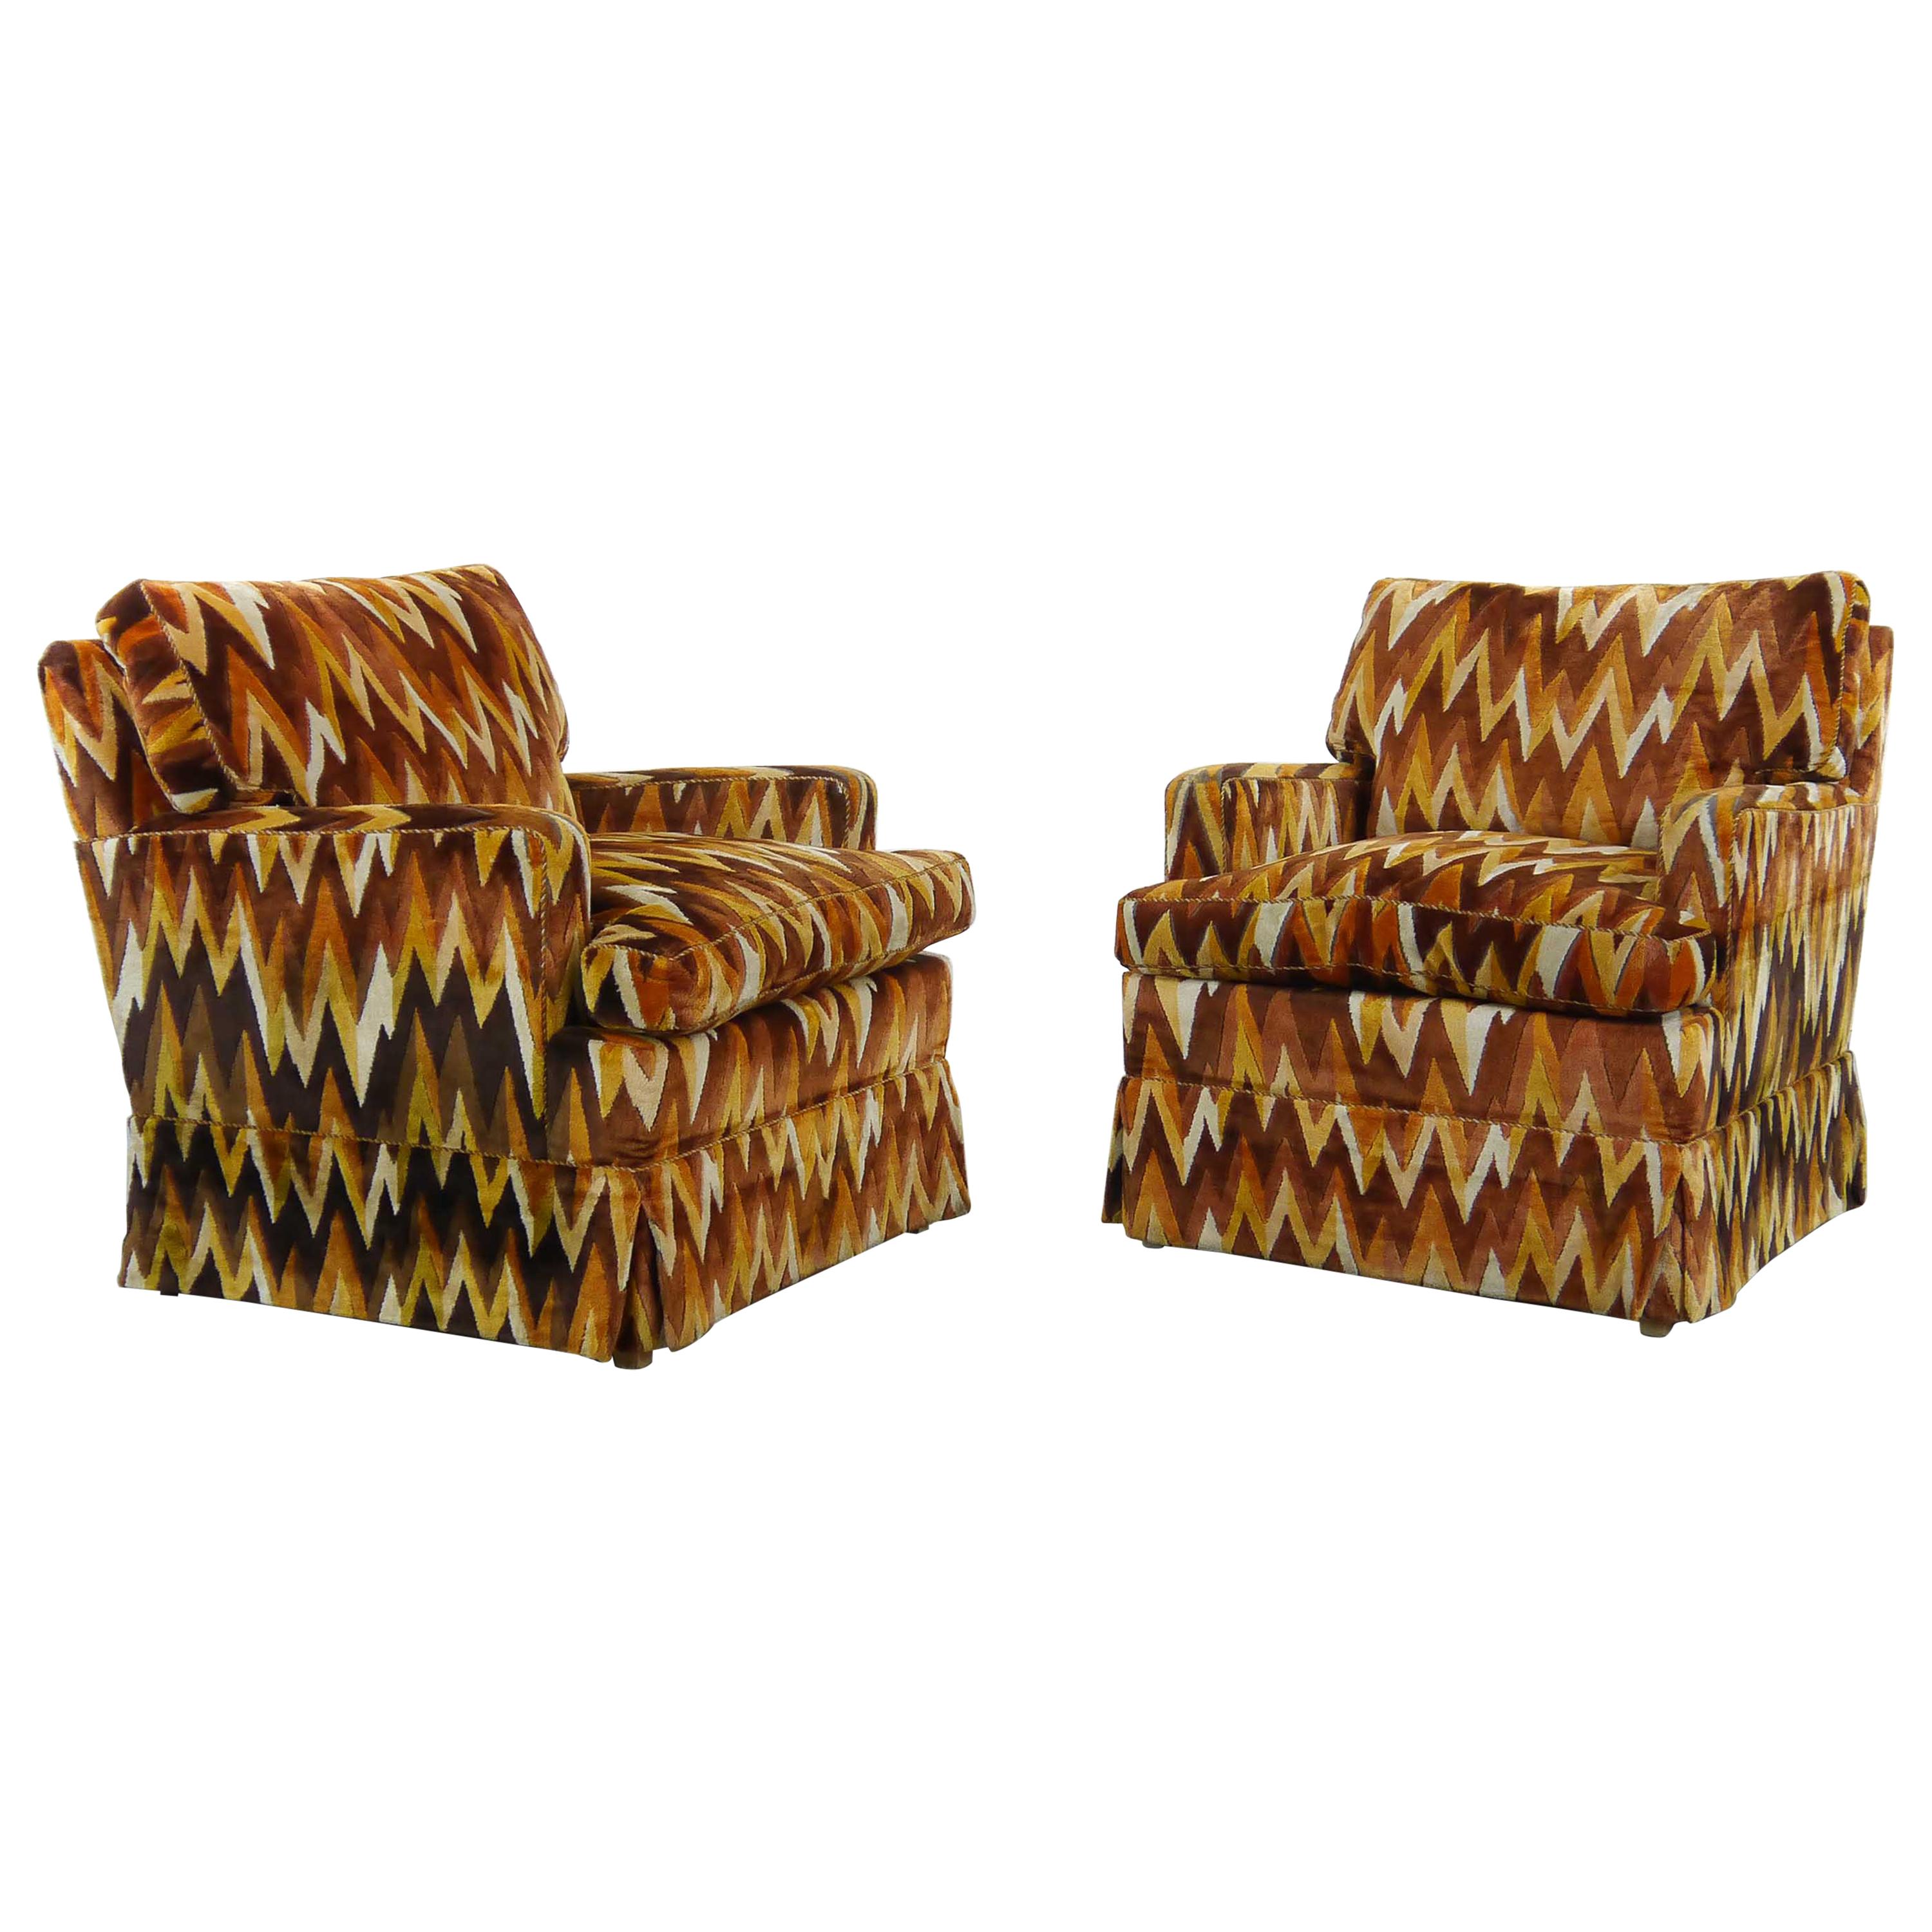 Set of 2 Vintage Missoni Style Zig Zag Chairs by Bielefelder Werkstätten For Sale